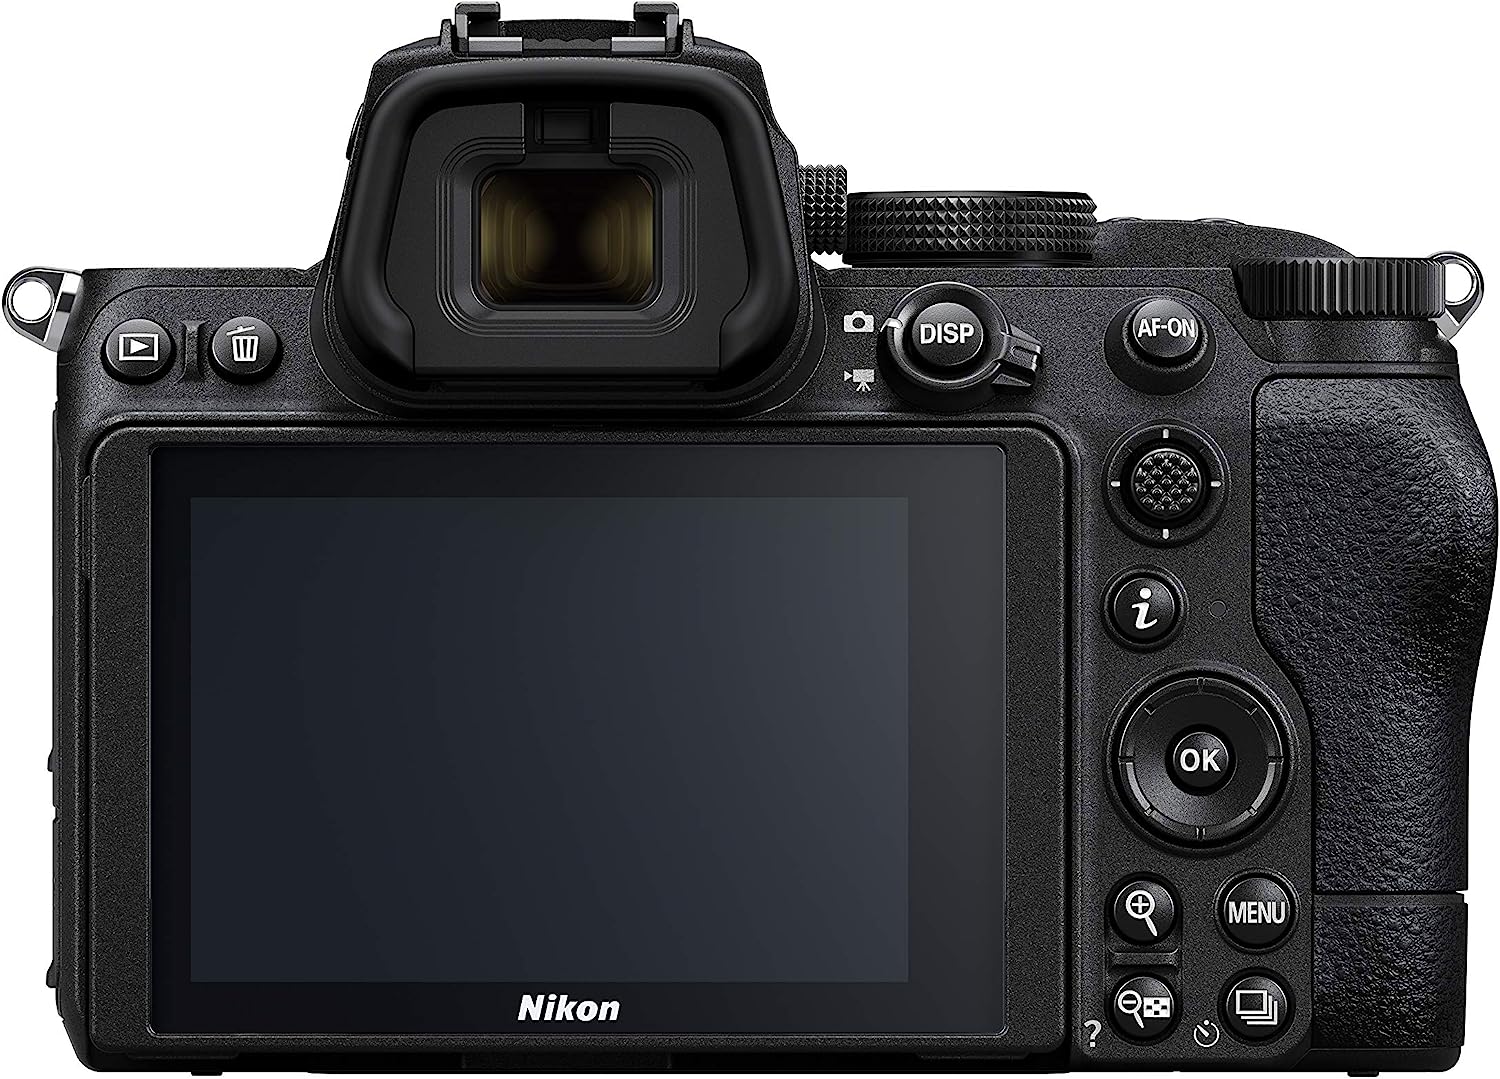 Nikon DSLR Camera Comparison: Exploring the Evolution of Nikon's Flagship Models